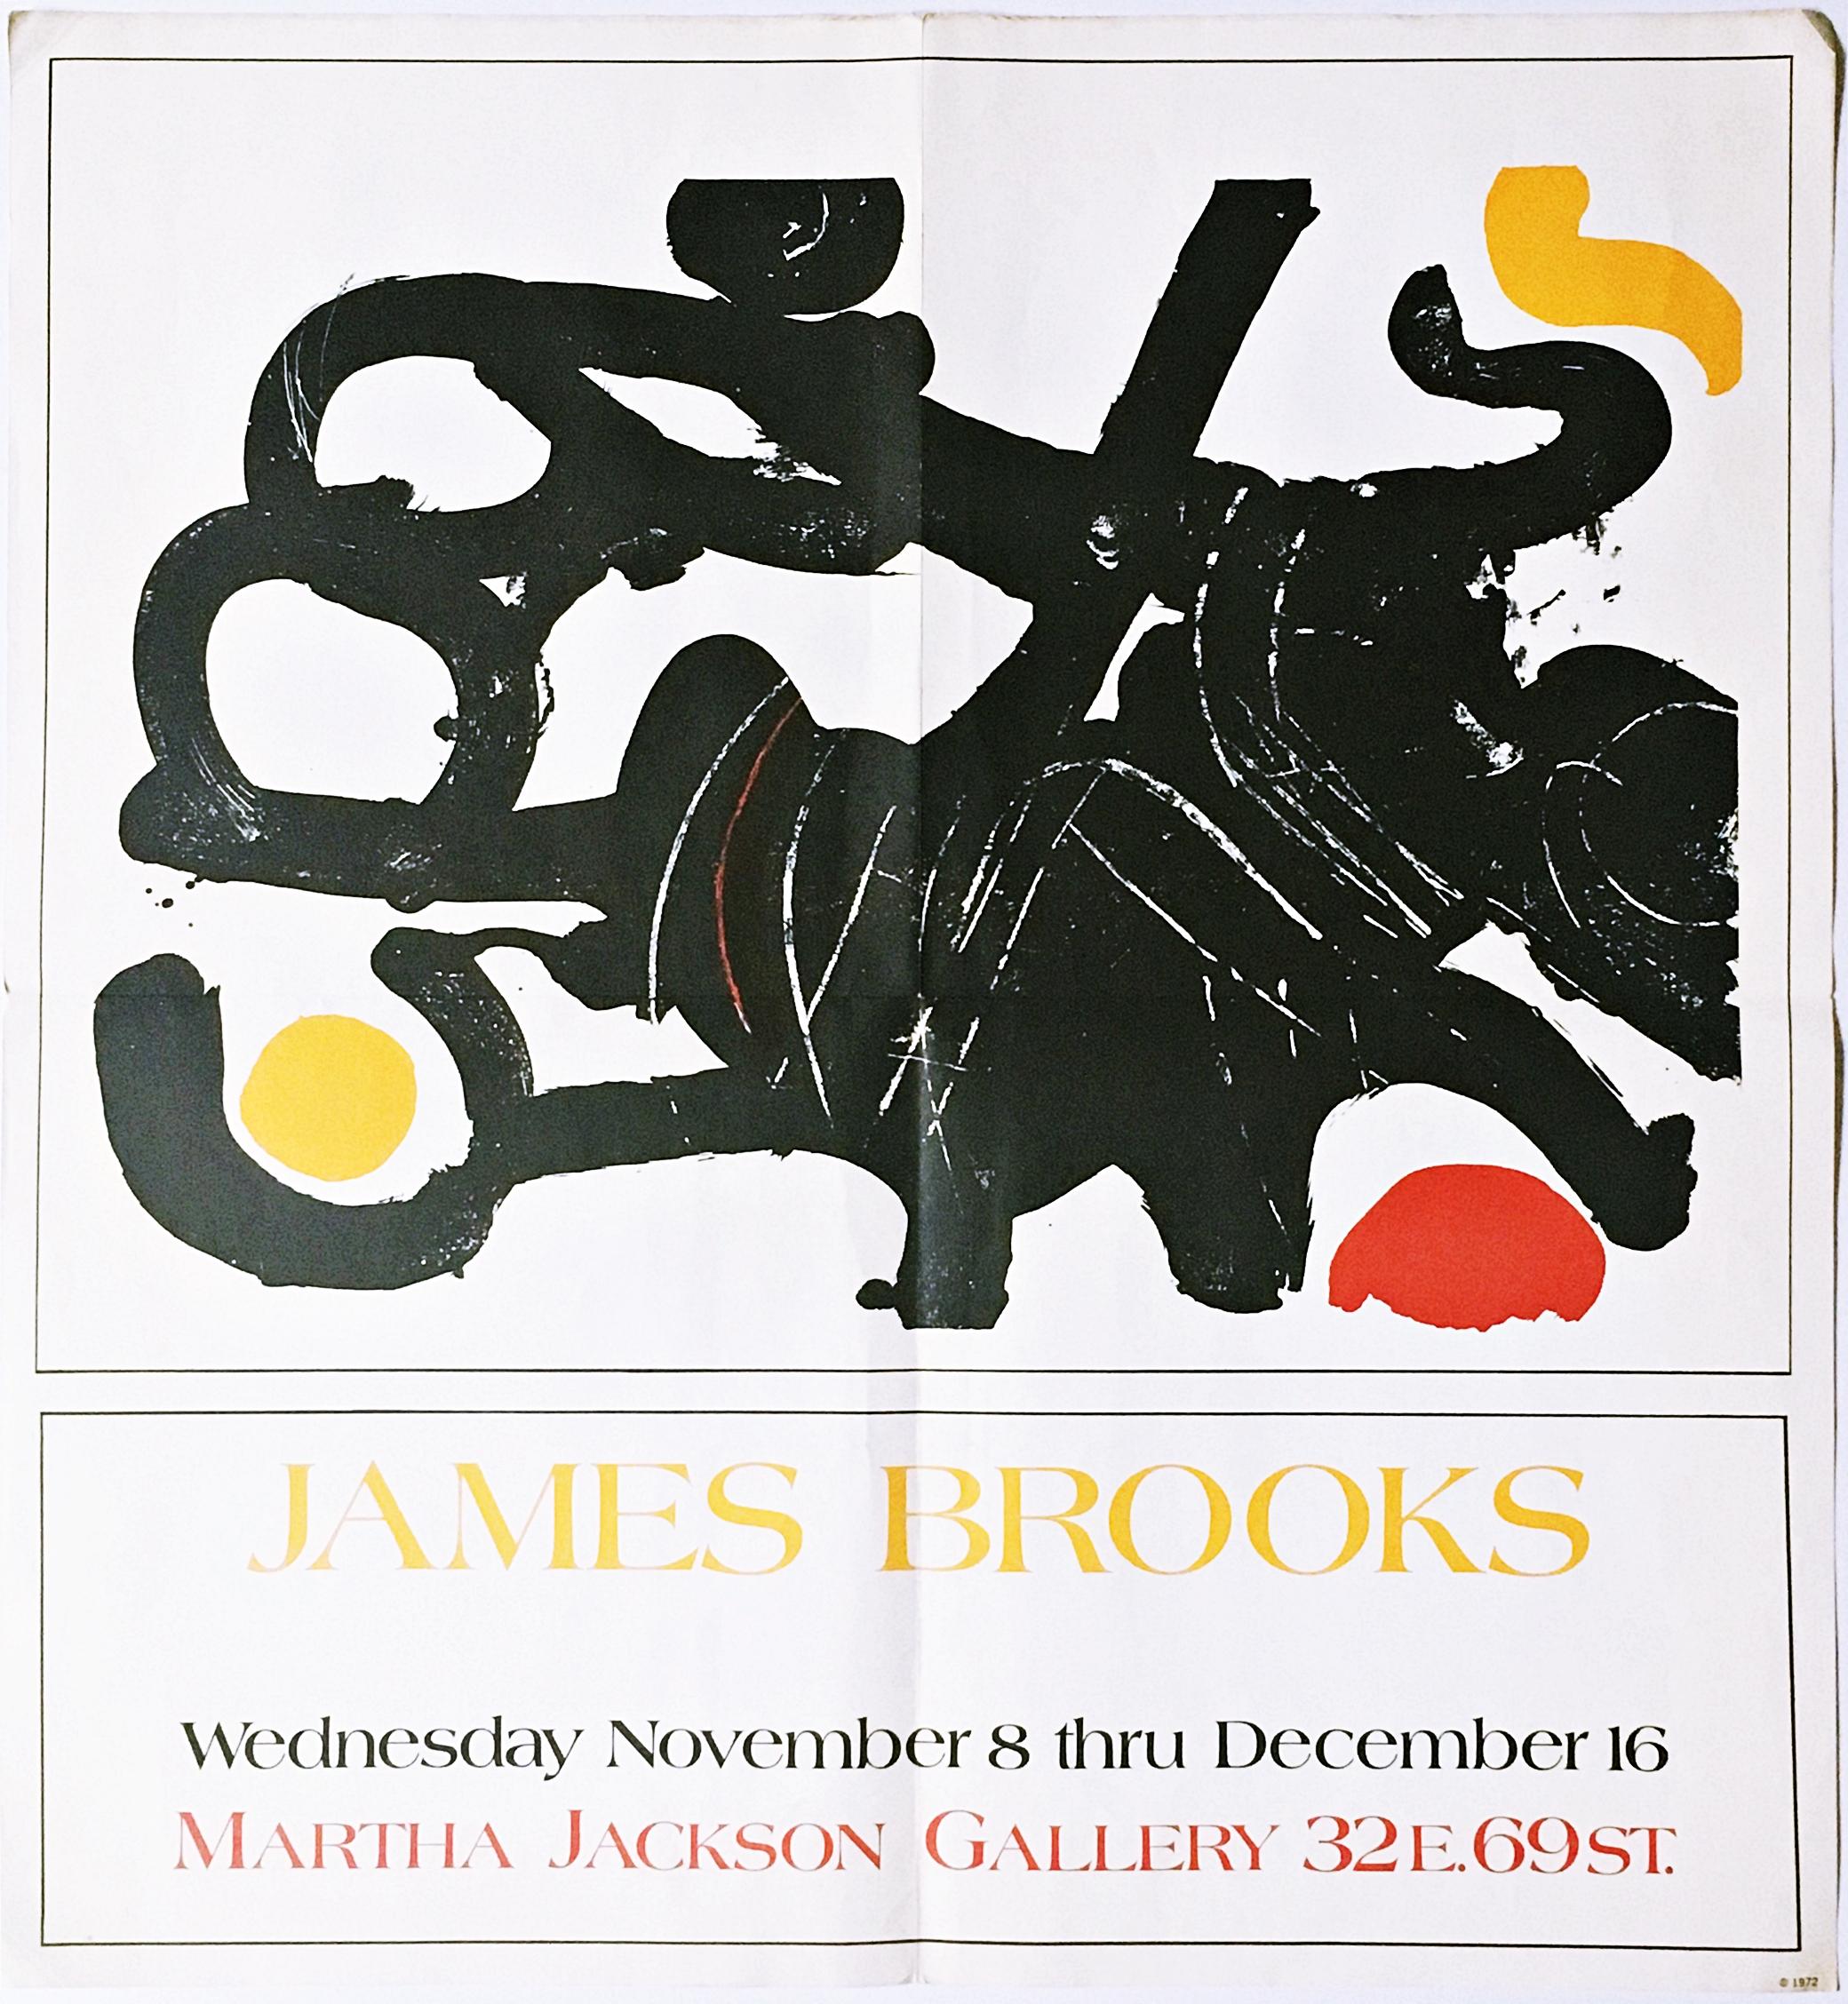 James Brooks
James Brooks à la Martha Jackson Gallery (rare affiche d'expressionnisme abstrait), 1972
Affiche lithographiée en offset
Édition limitée non signée et non numérotée
24 1/4 × 22 3/4 pouces
Non encadré
Affiche vintage très rare et de